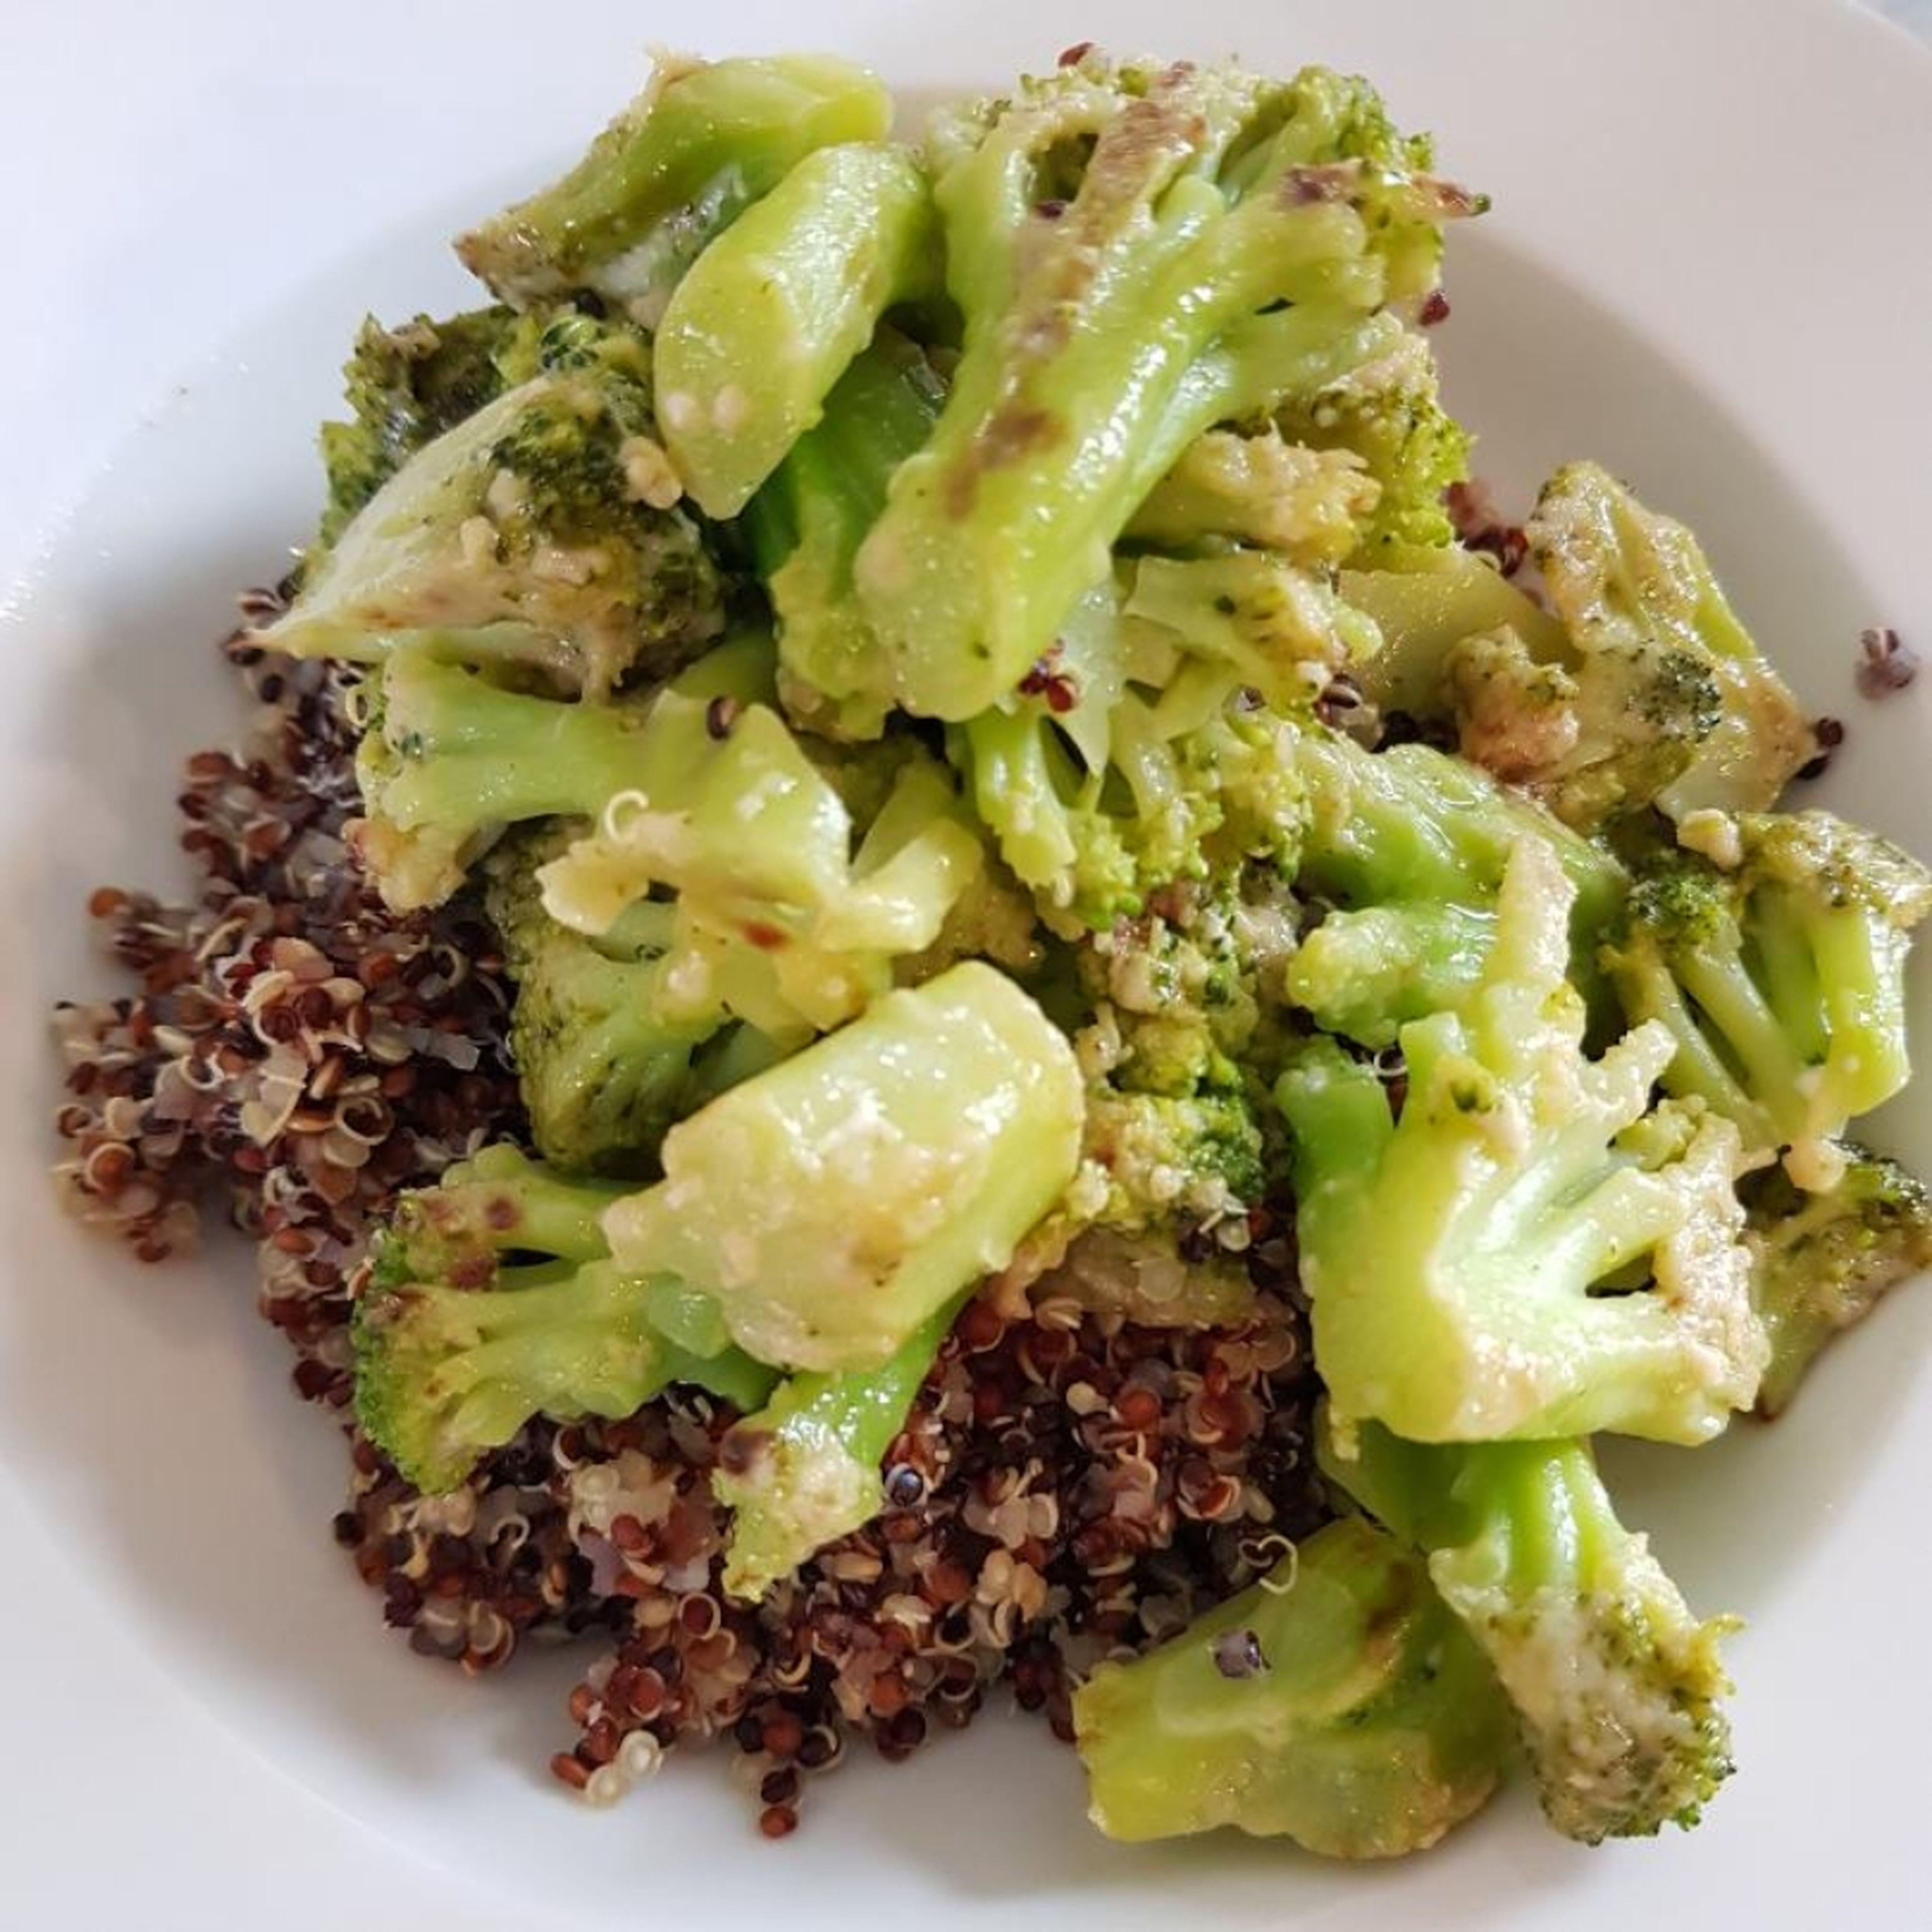 Den Joghurt/Skyr unter den Quinoa mischen und auf Teller verteilen. Abschließend den Brokkoli verteilen.